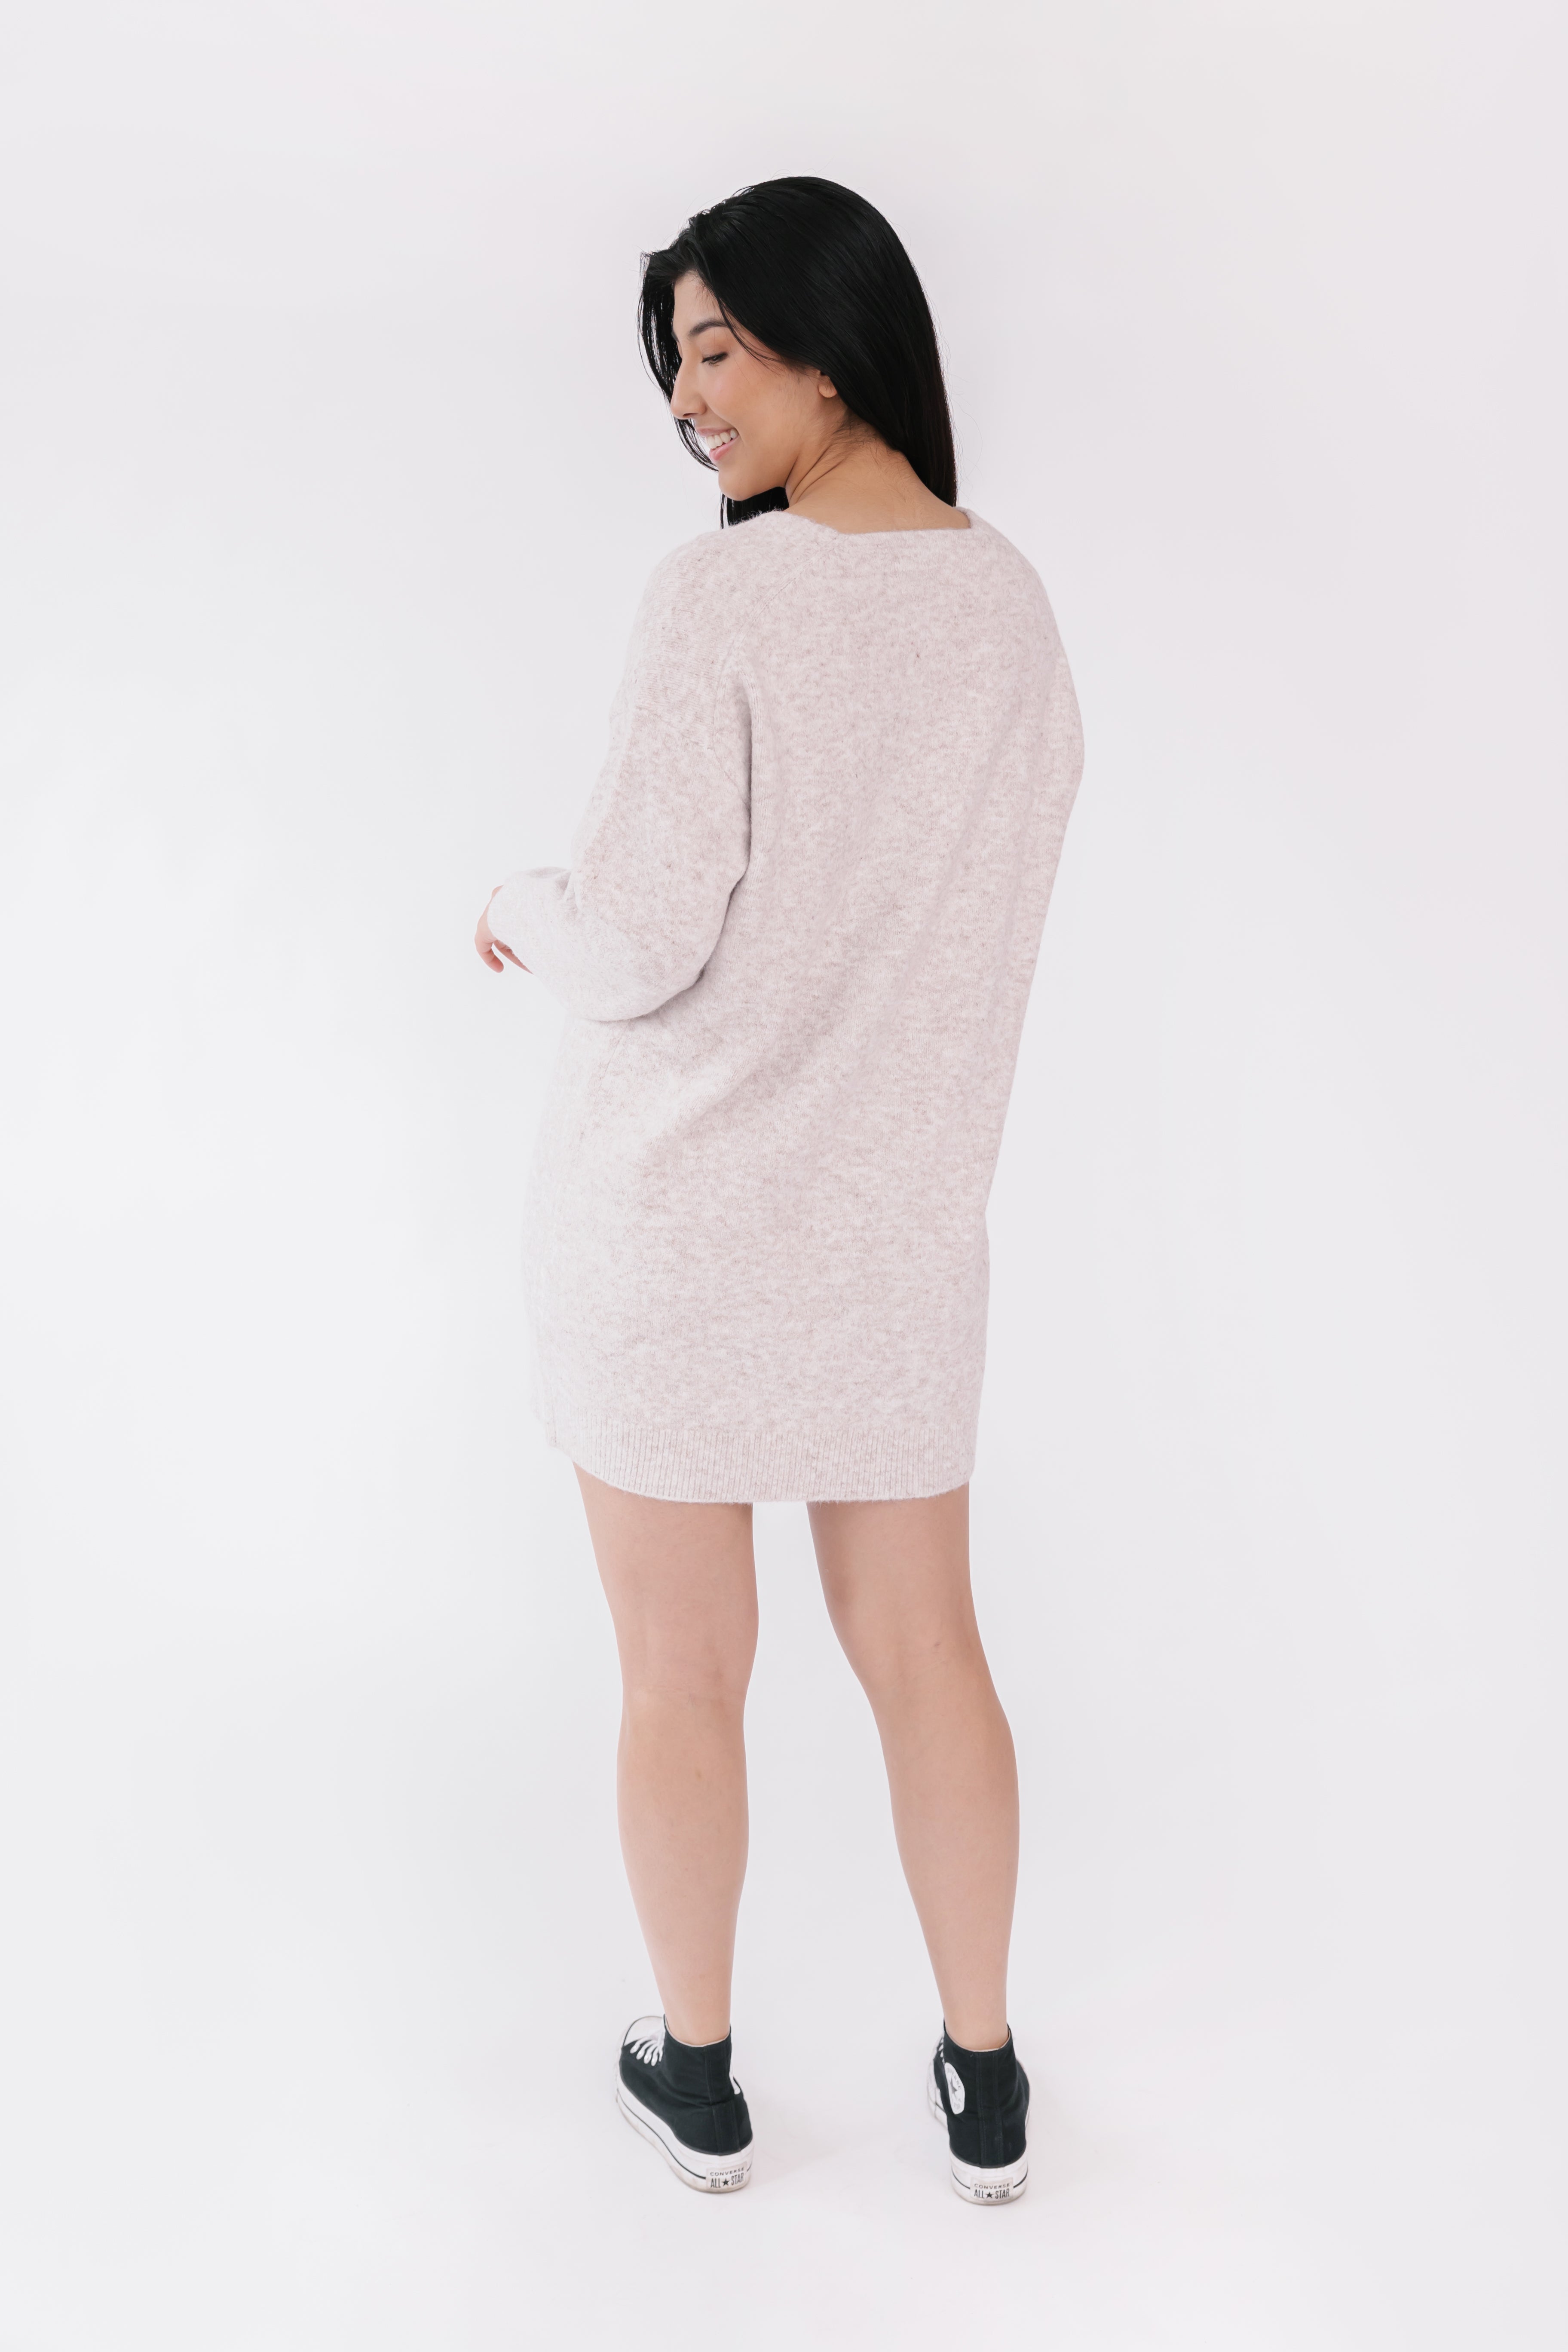 Jillian Harris and Smash + Tess Sweater Weather Mini Dress in Oatmeal